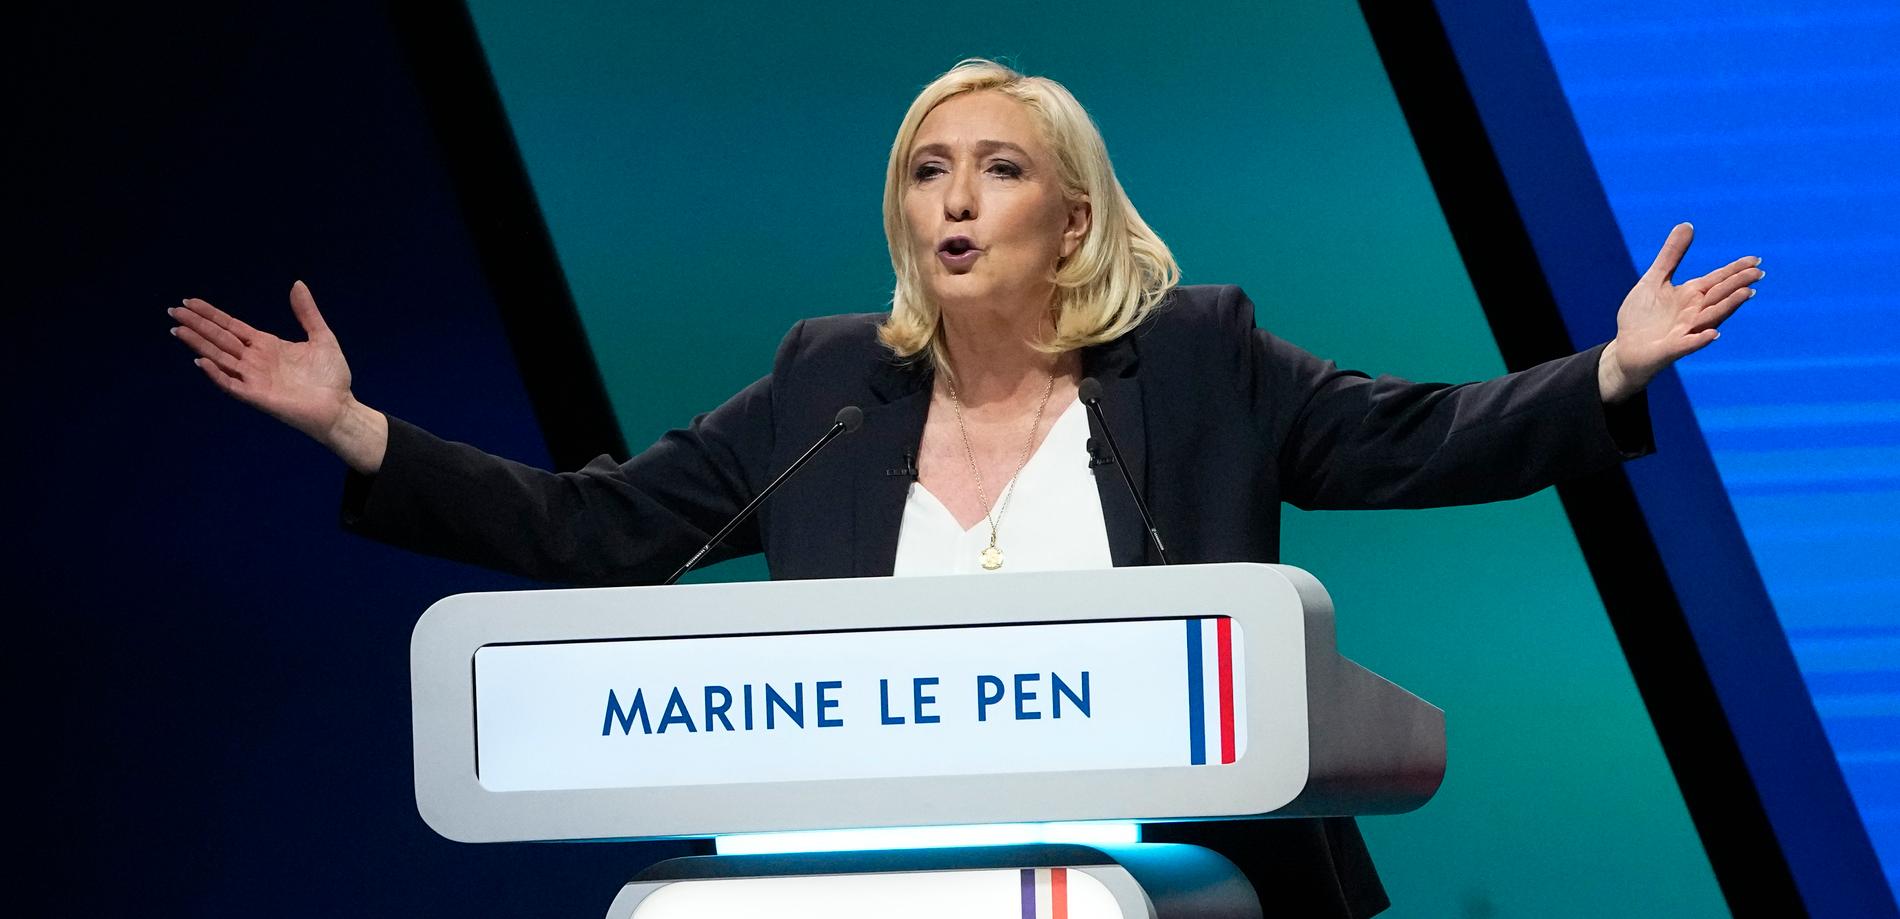 Marine Le Pens högerextrema parti Rassemblement National ligger just nu på rekordhöga siffror i opinionsmätningar inför söndagens val. 